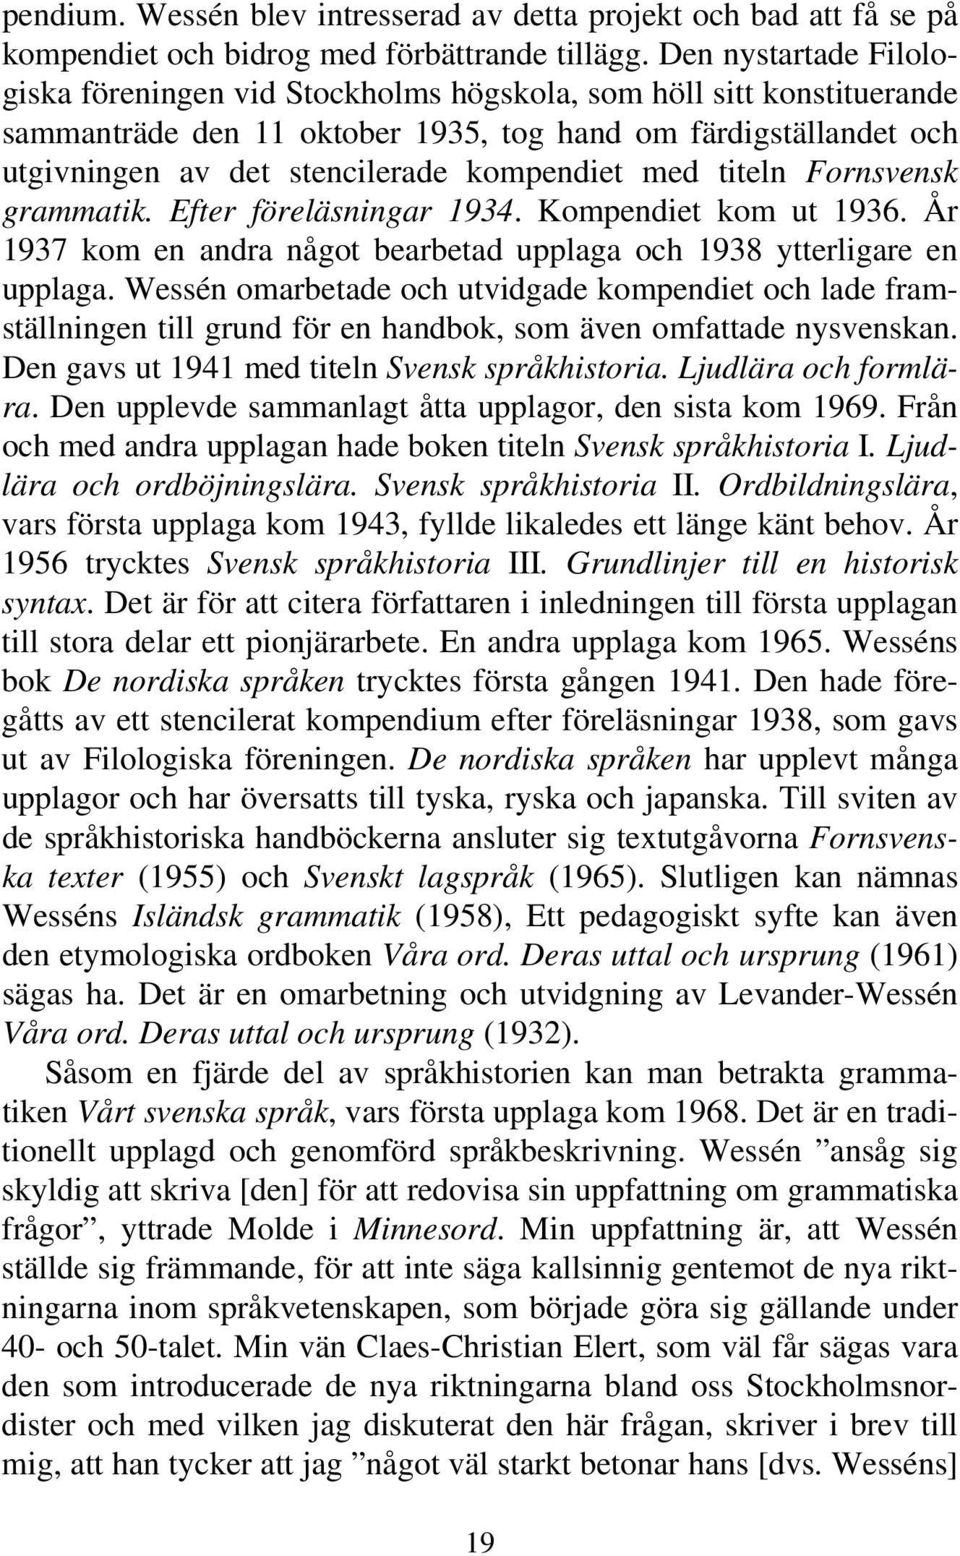 kompendiet med titeln Fornsvensk grammatik. Efter föreläsningar 1934. Kompendiet kom ut 1936. År 1937 kom en andra något bearbetad upplaga och 1938 ytterligare en upplaga.